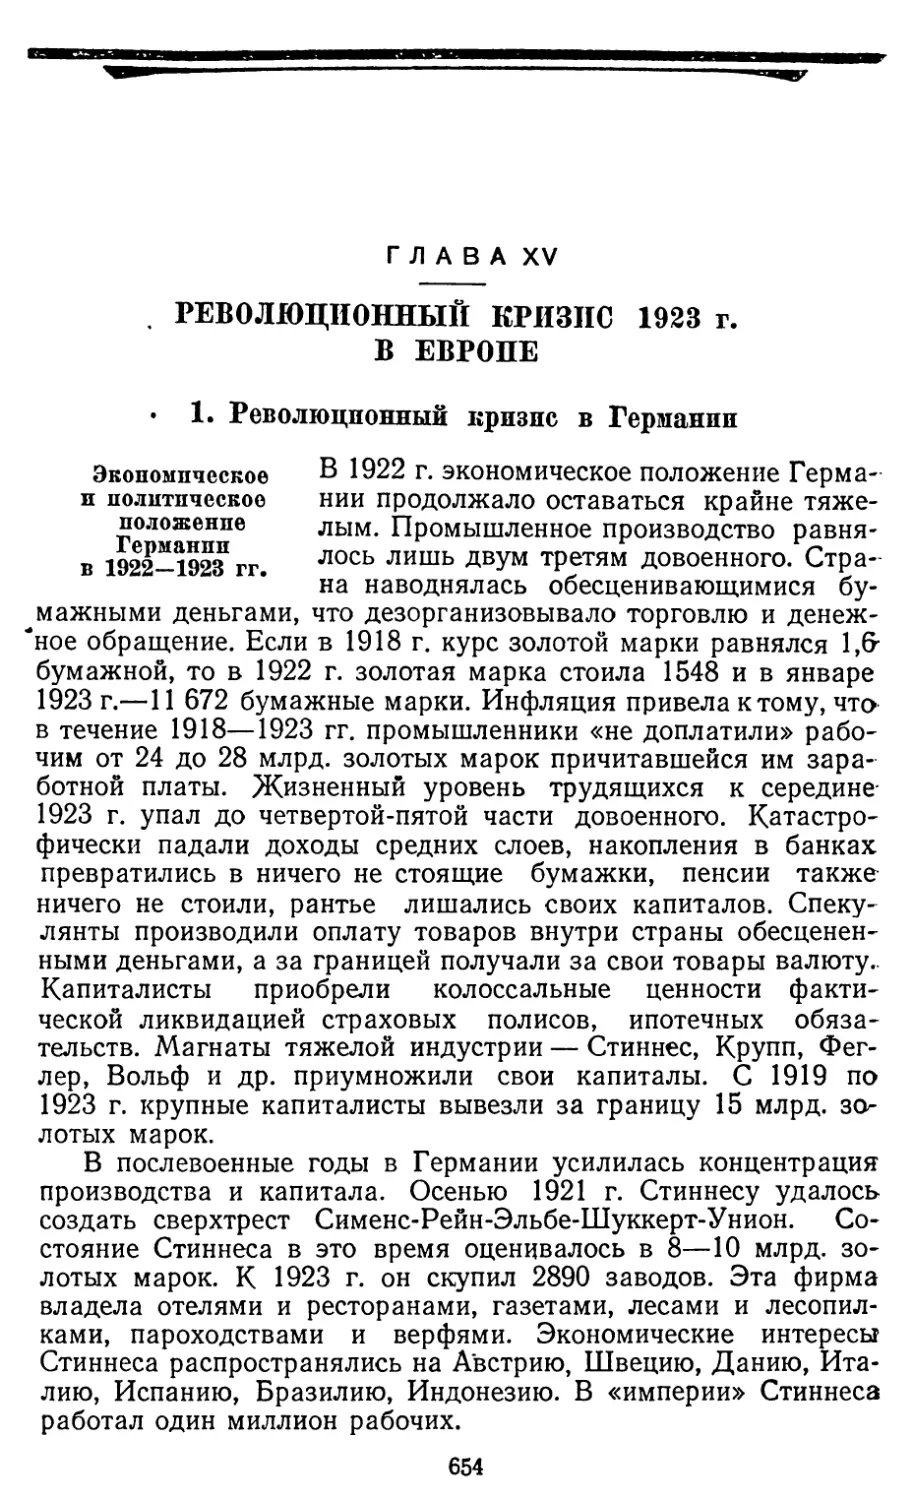 Глава XV. РЕВОЛЮЦИОННЫЙ КРИЗИС 1923 г. В ЕВРОПЕ